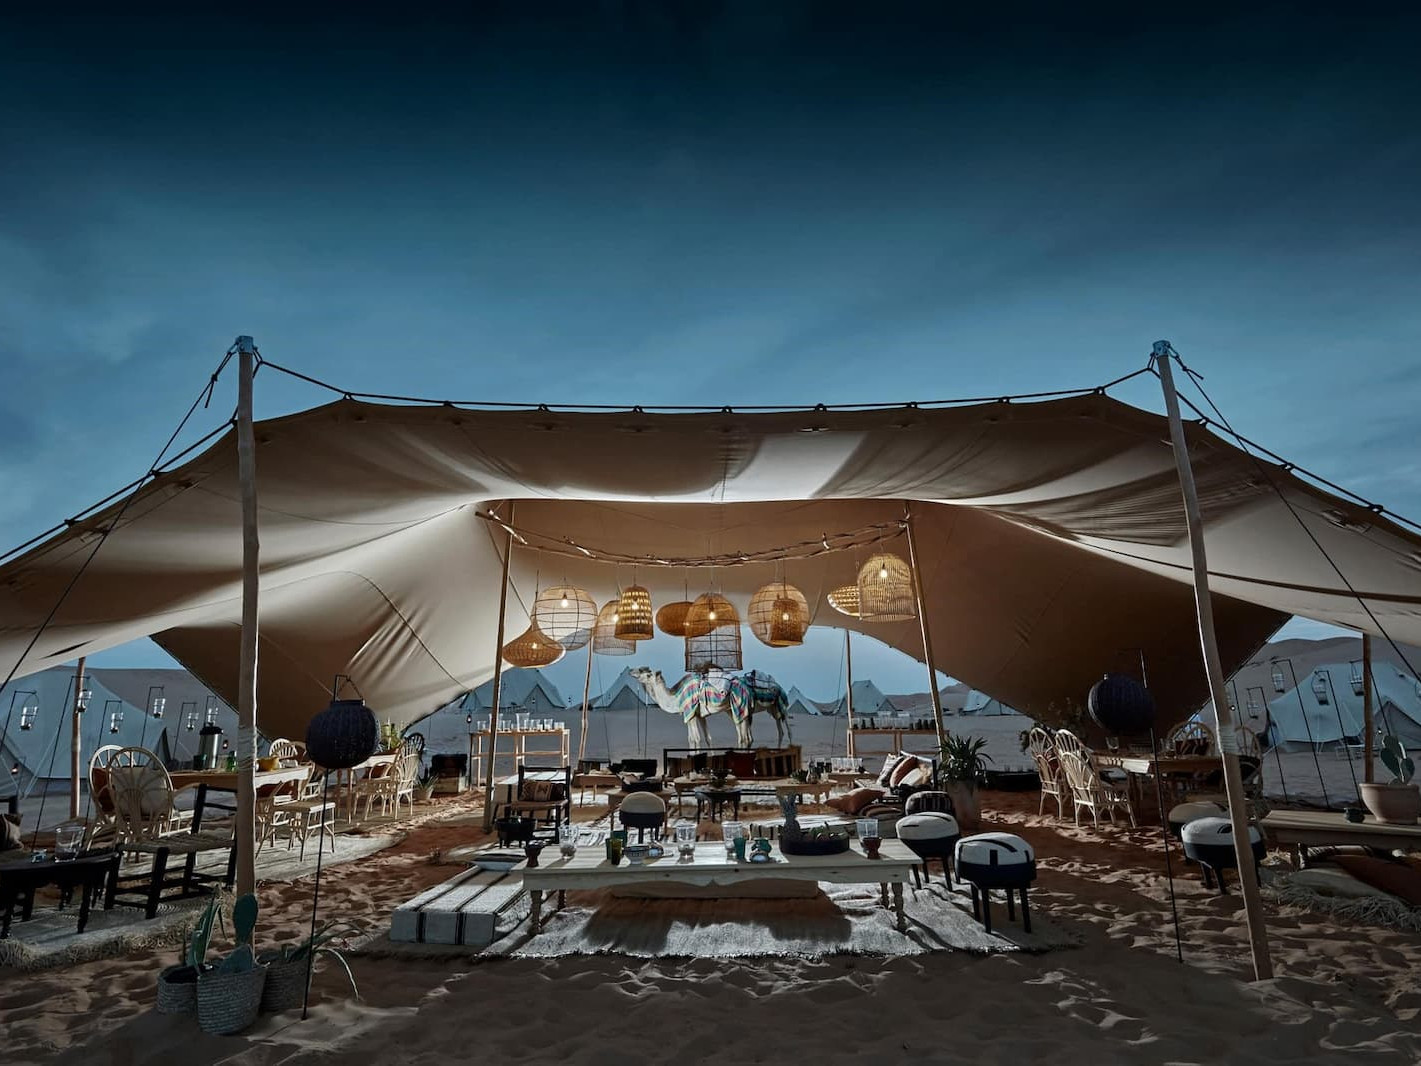 Magic Camps un campement de luxe aux Émirats